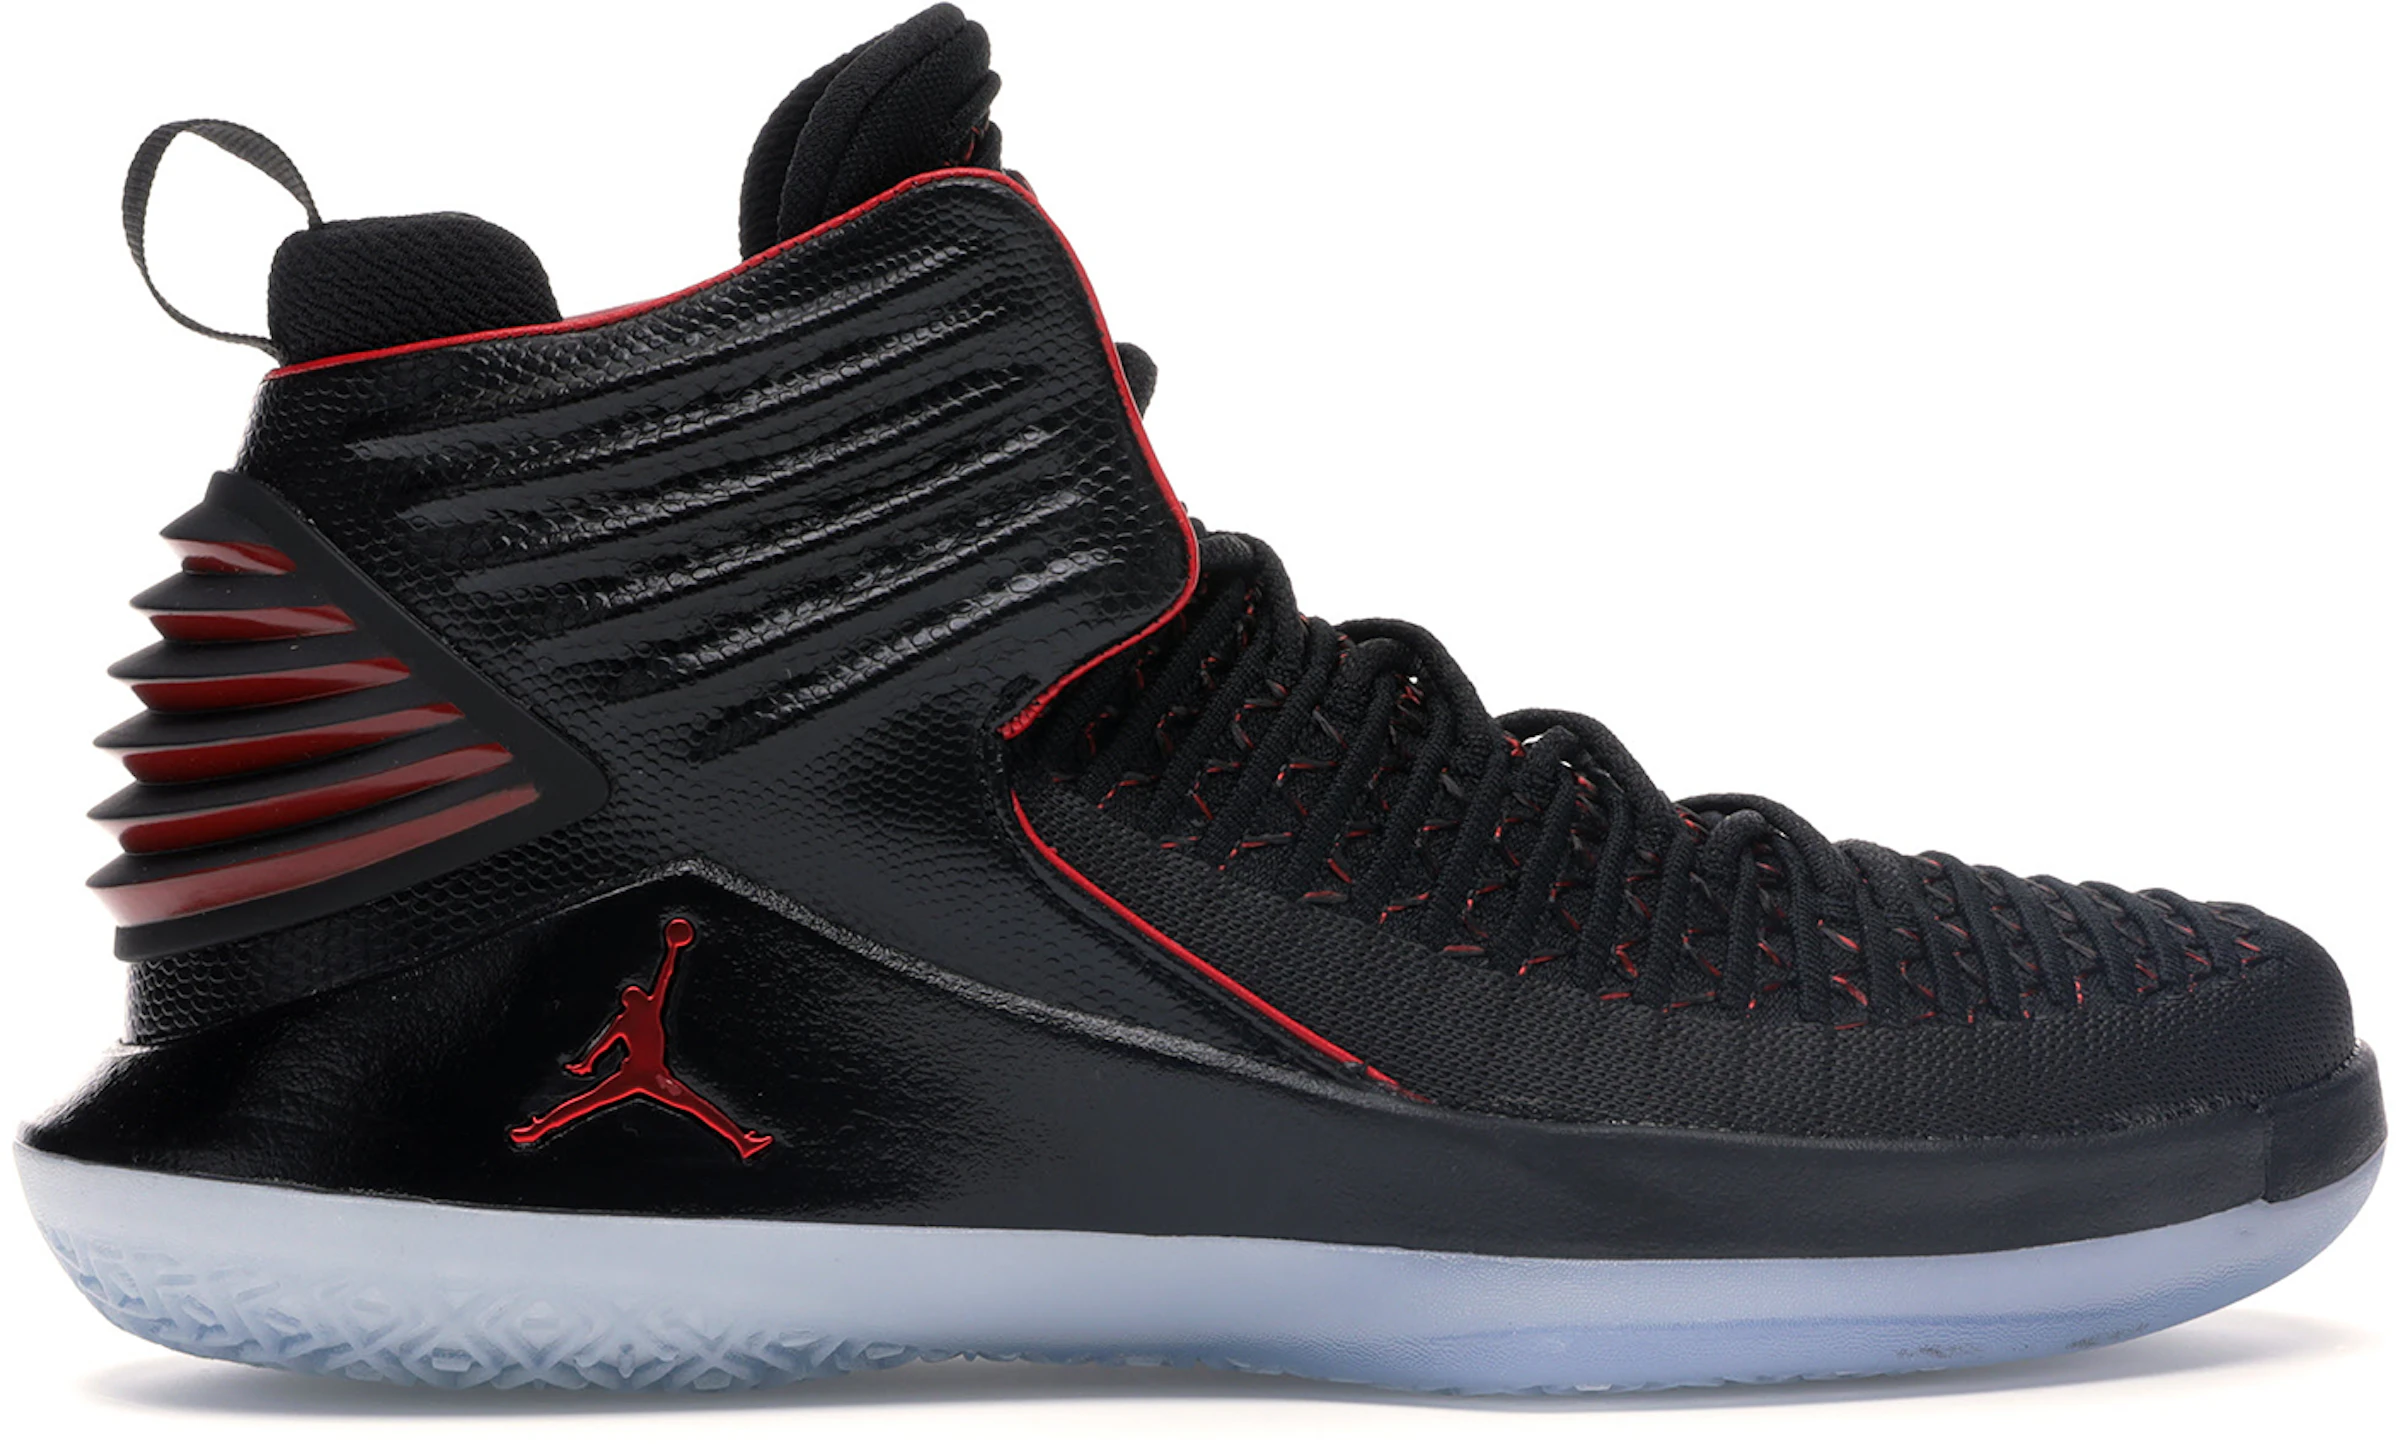 Compra Jordan 32 Calzado y sneakers nuevos StockX